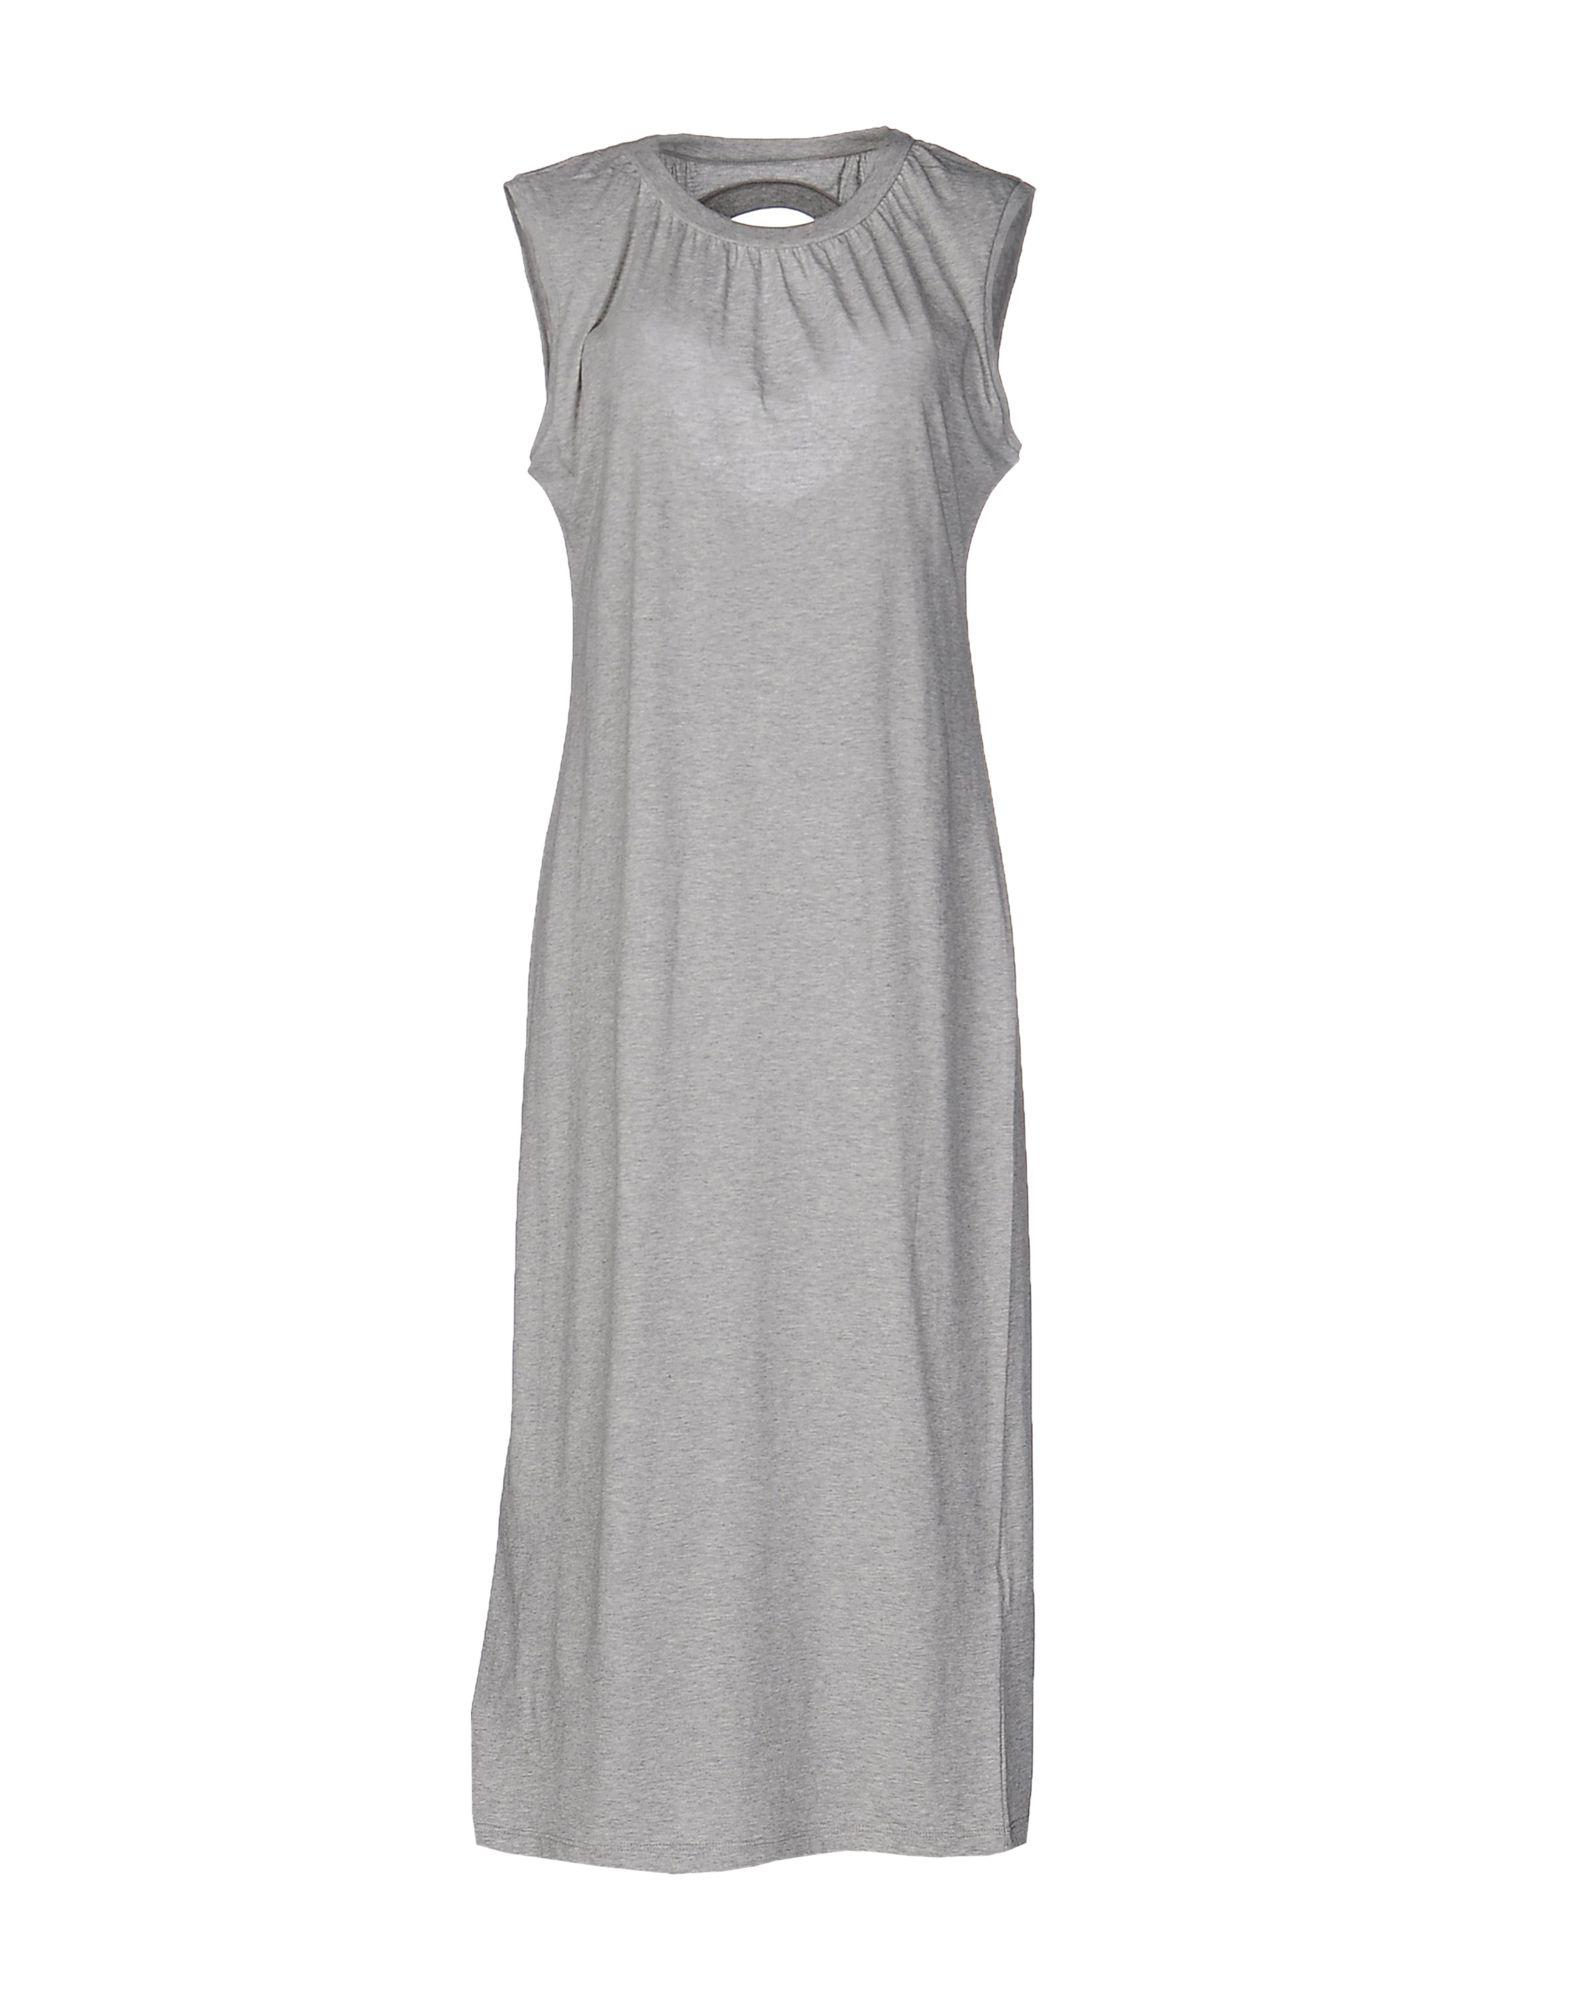 Mm6 Maison Margiela Midi Dress In Light Grey | ModeSens